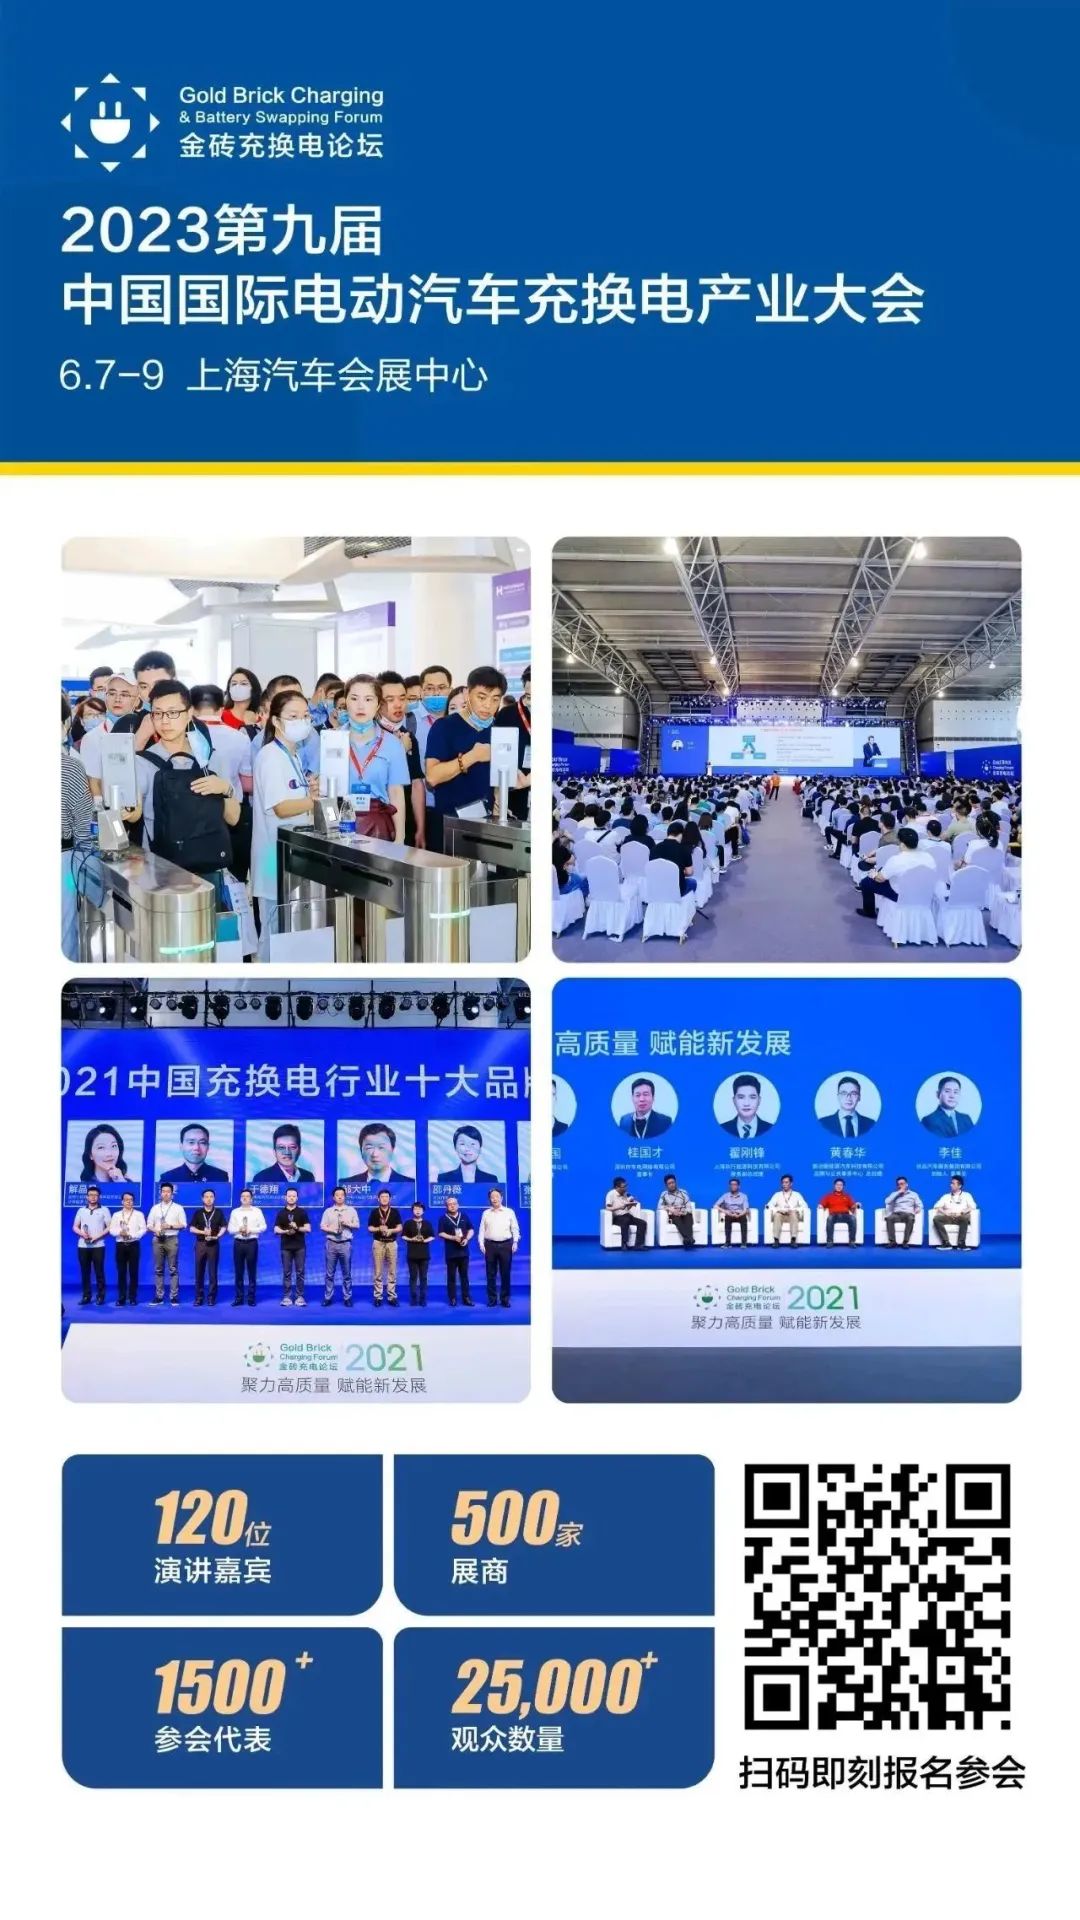 上海国际充电设施展览会__上海充电展会